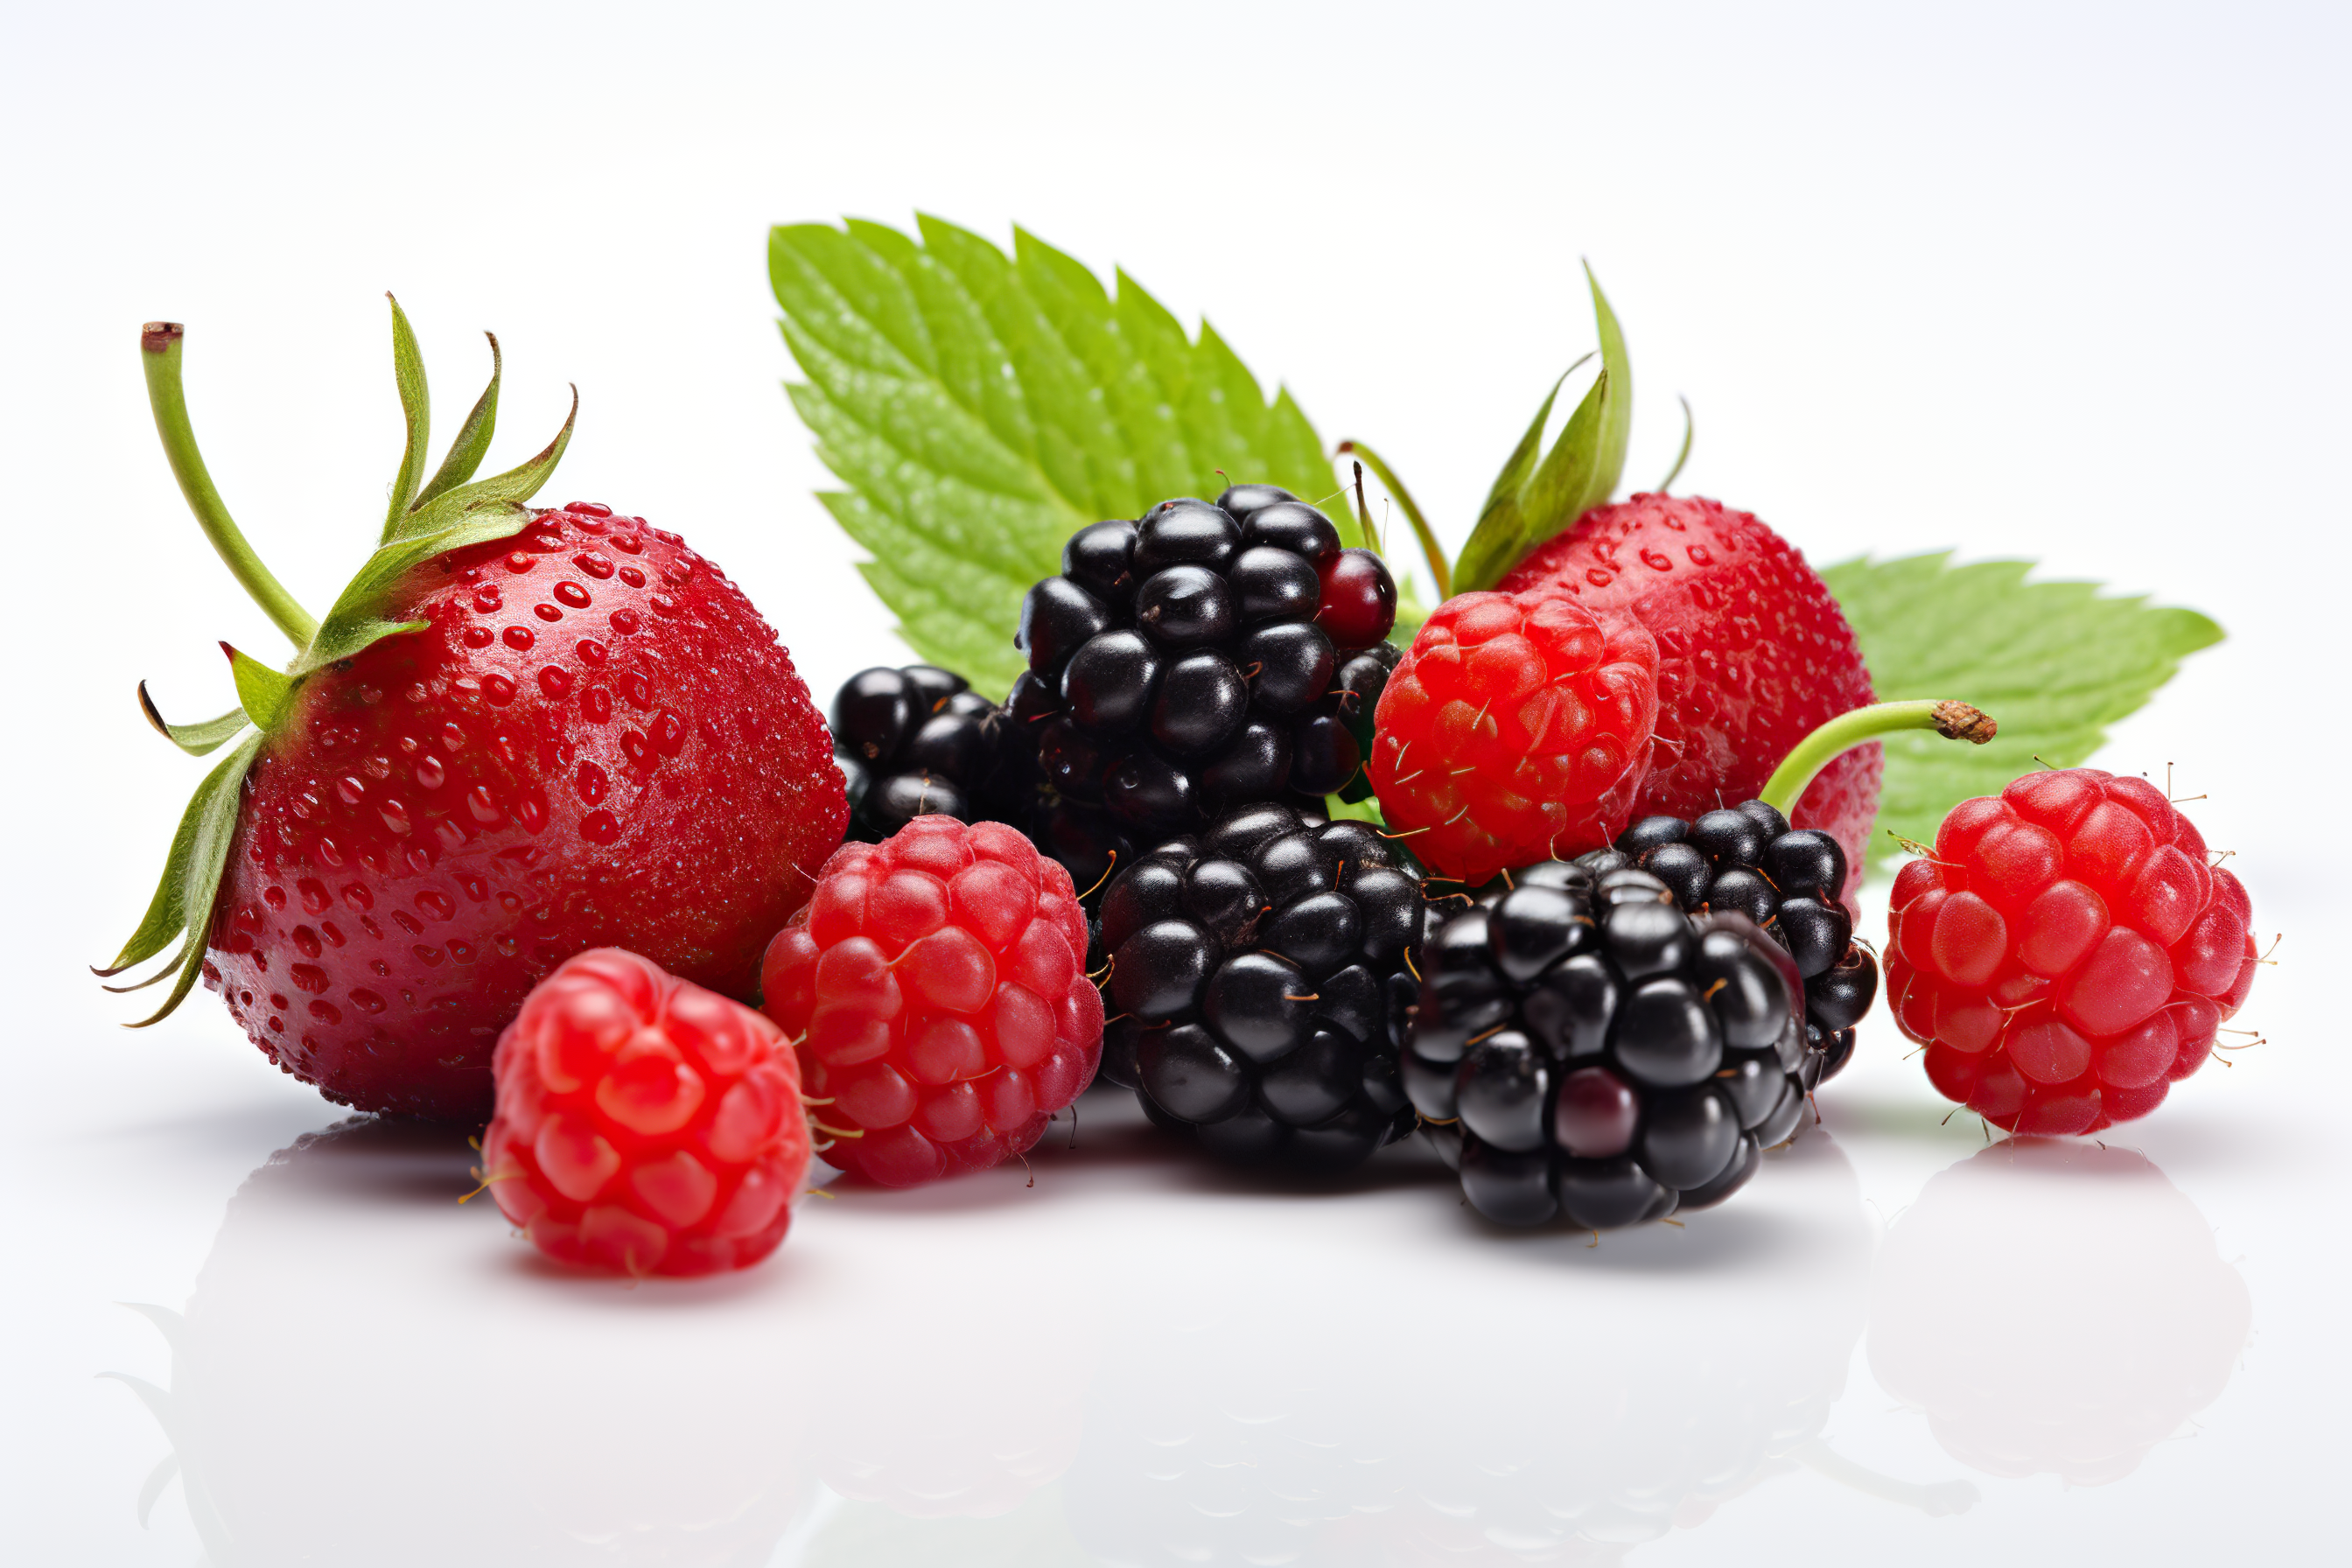 Close-up arrangement mixed, assorted berries including blackberries